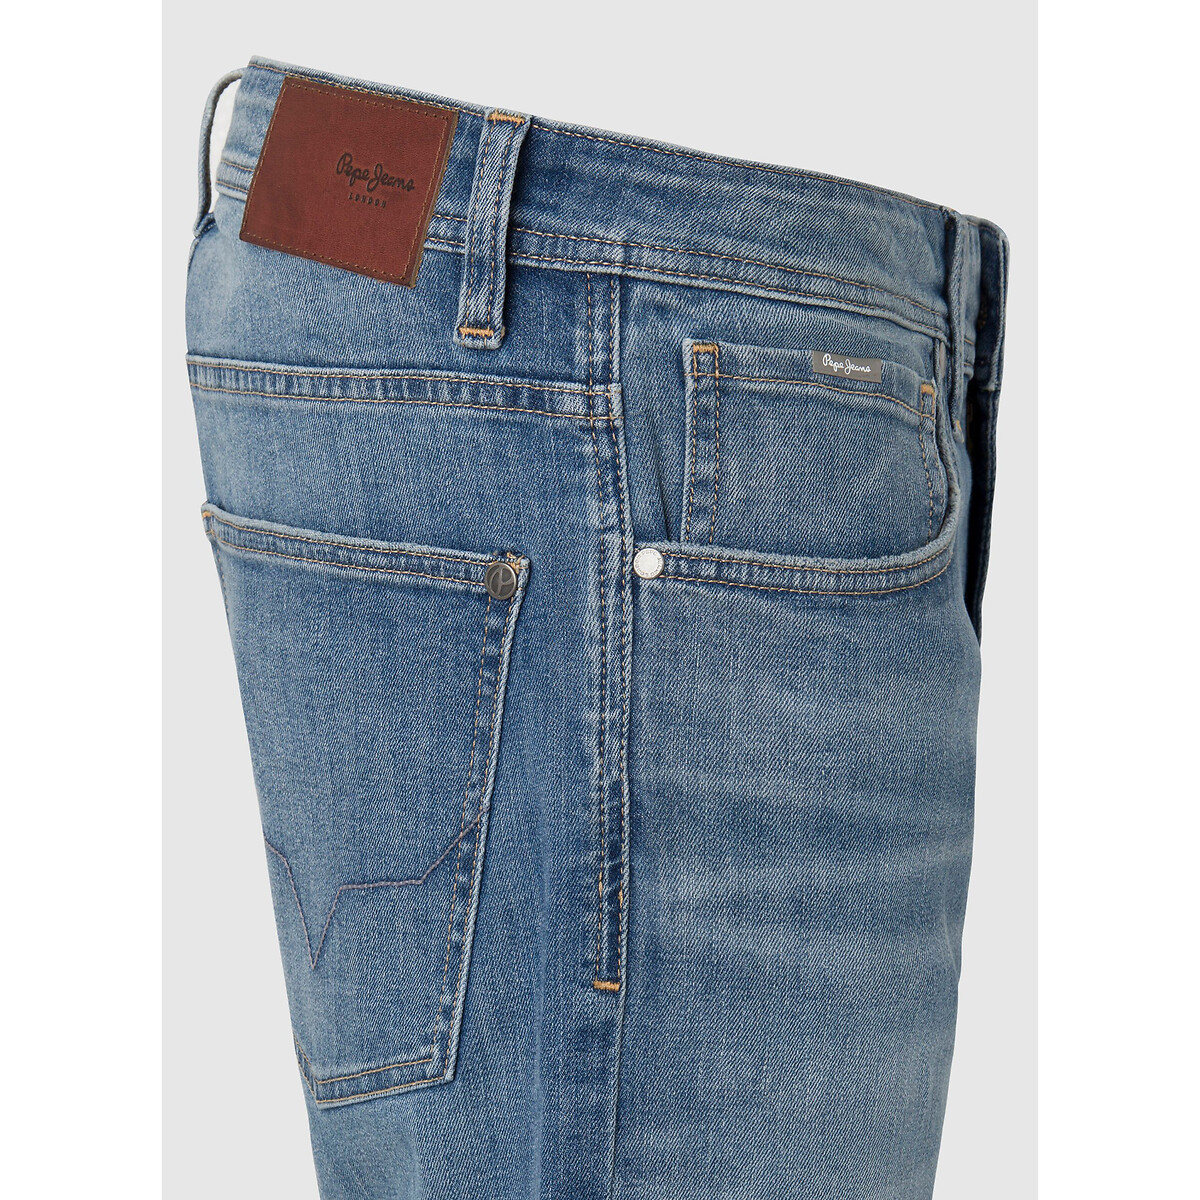 Шорты из джинсовой ткани прямого покроя  34 (US) синий LaRedoute, размер 34 (US) Шорты из джинсовой ткани прямого покроя  34 (US) синий - фото 3